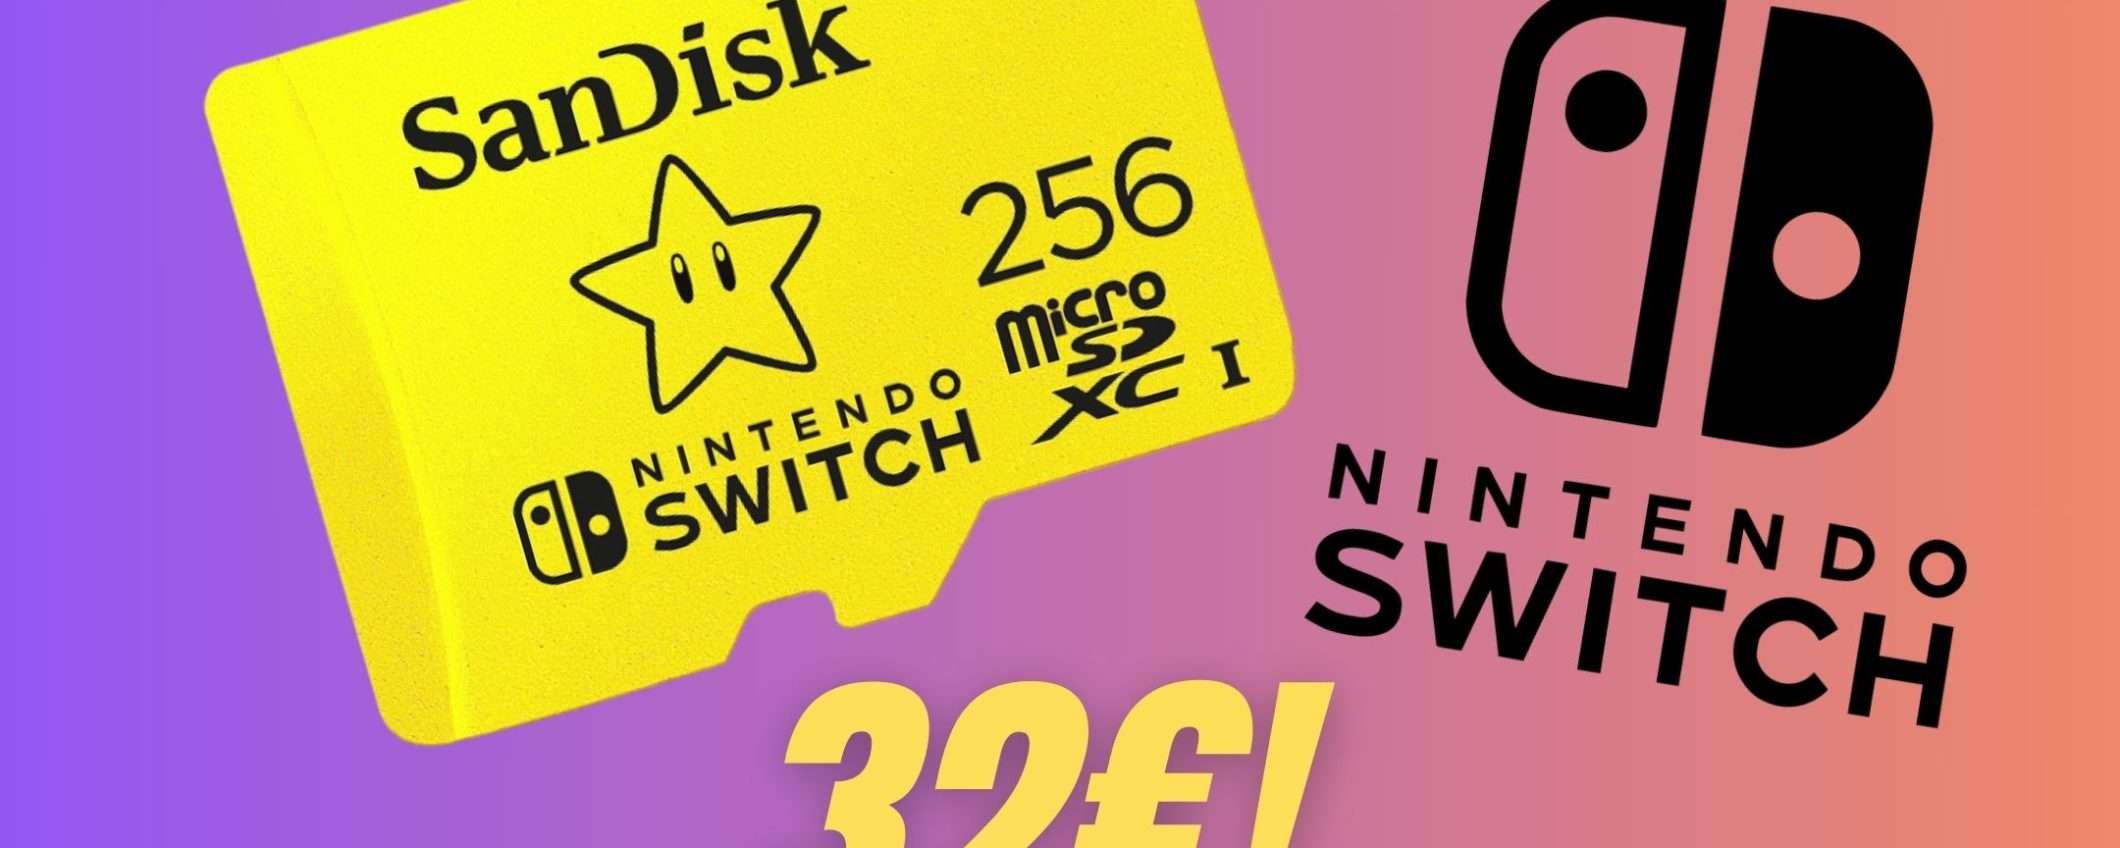 La microSD perfetta per Nintendo Switch crolla di prezzo su Amazon!